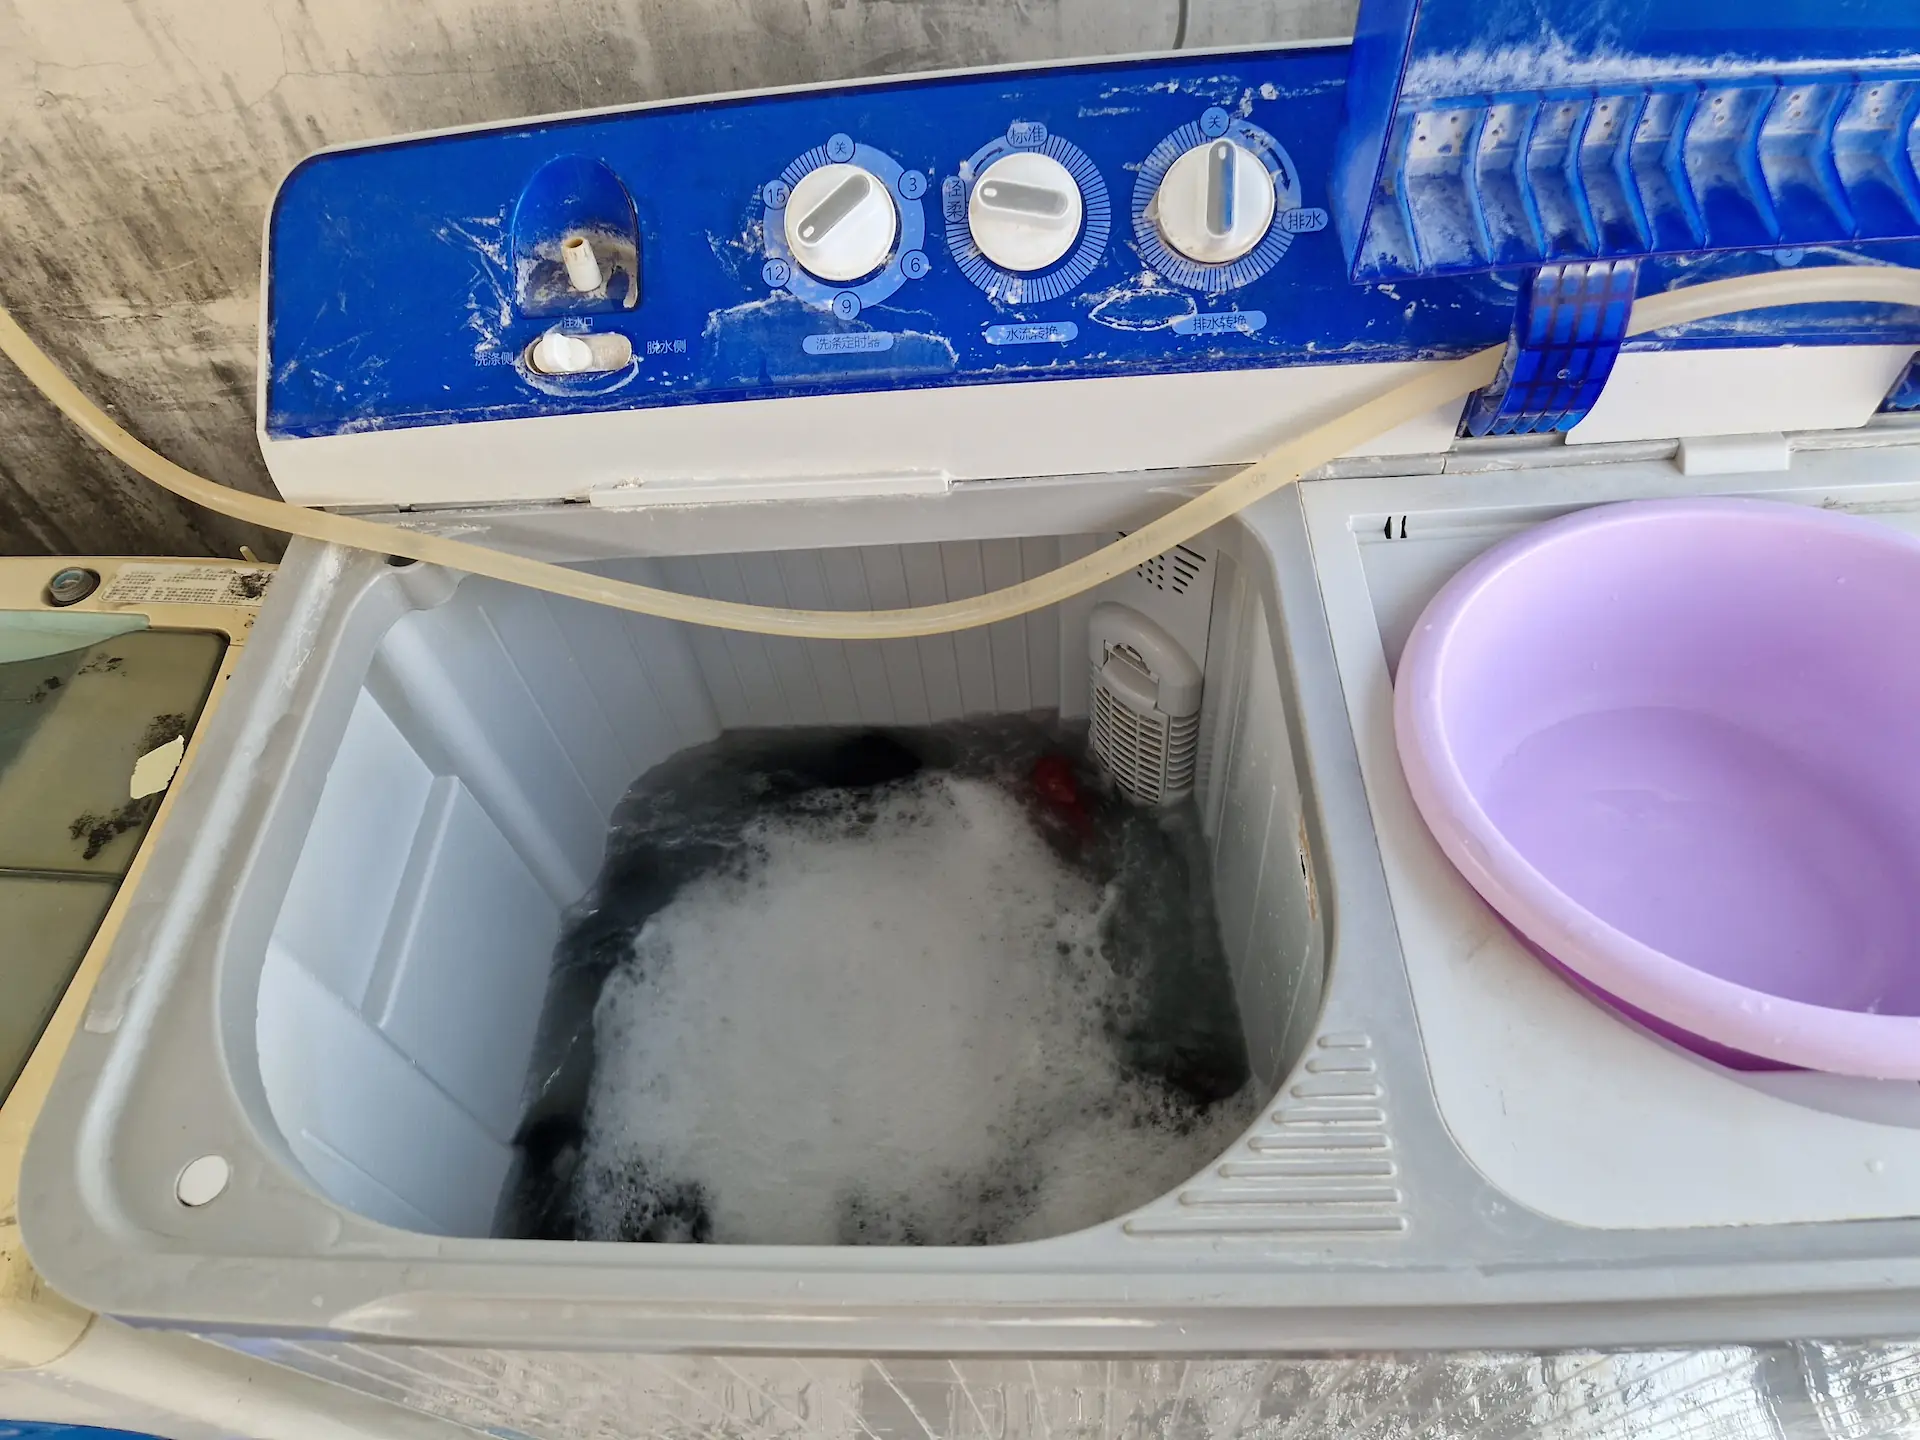 La machine à laver n'a pas de couvercle et est déjà préremplie d'eau.